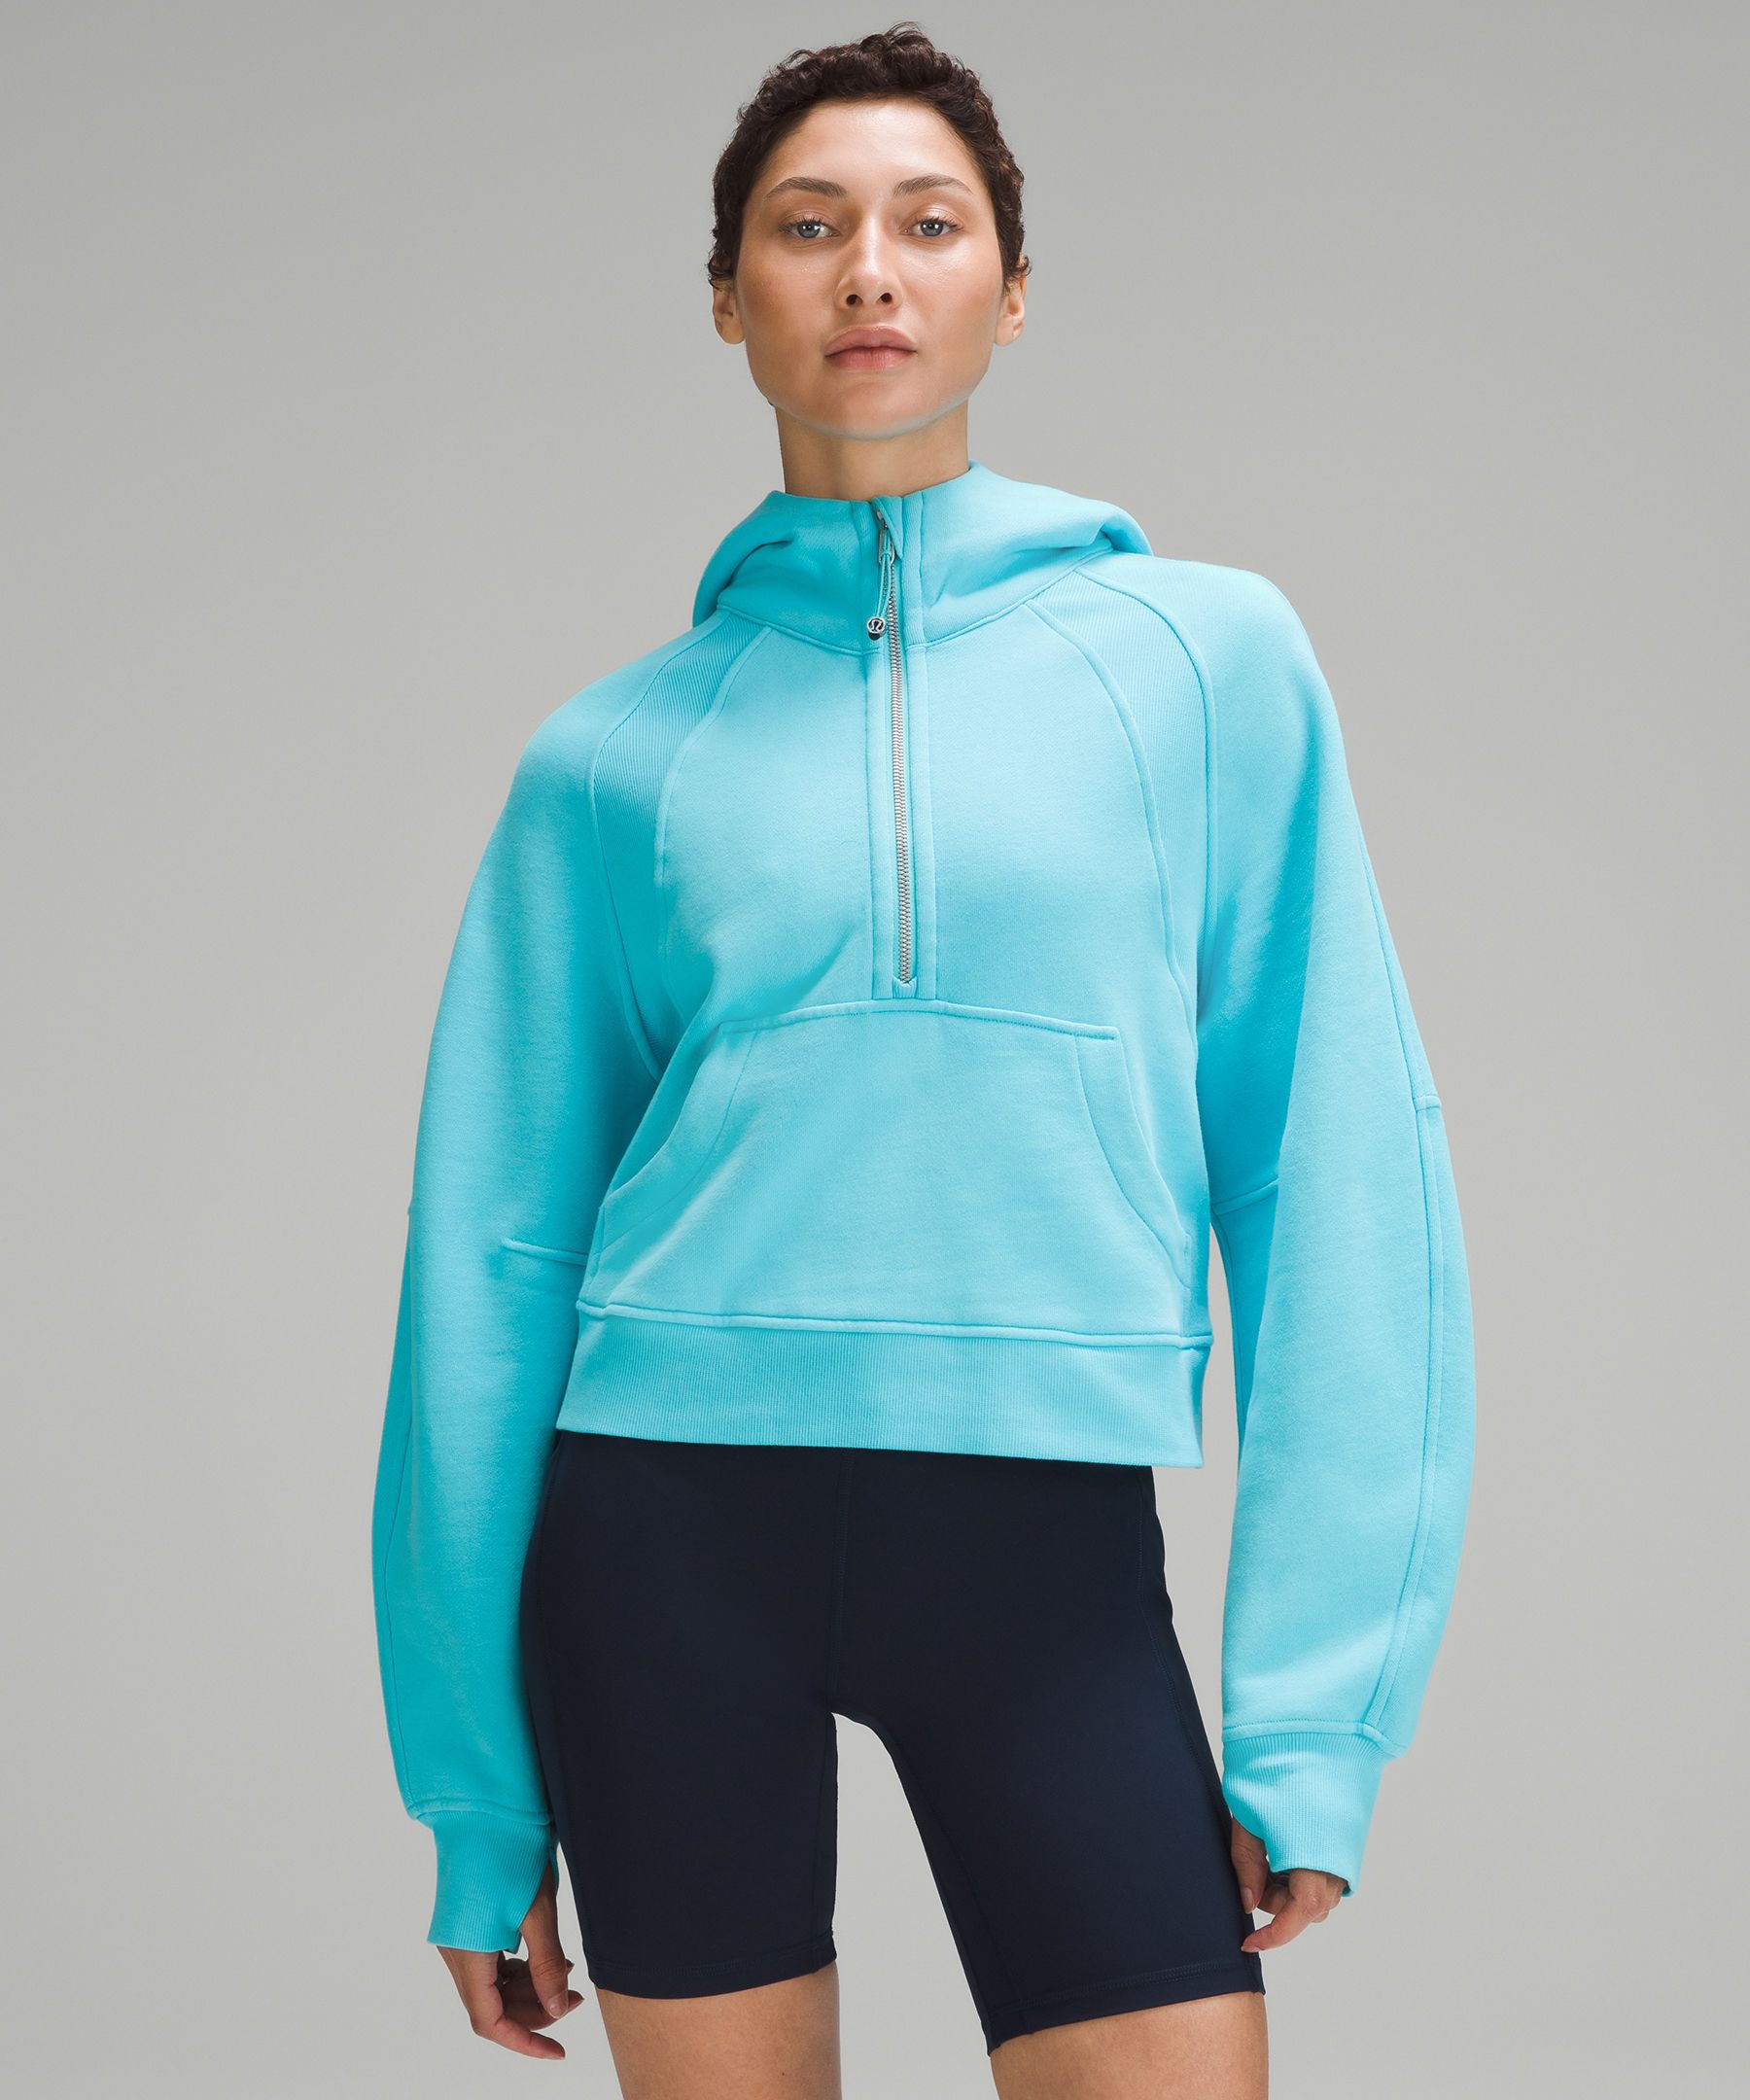 Scuba Oversized Half-Zip Hoodie | Women's Hoodies & Sweatshirts 